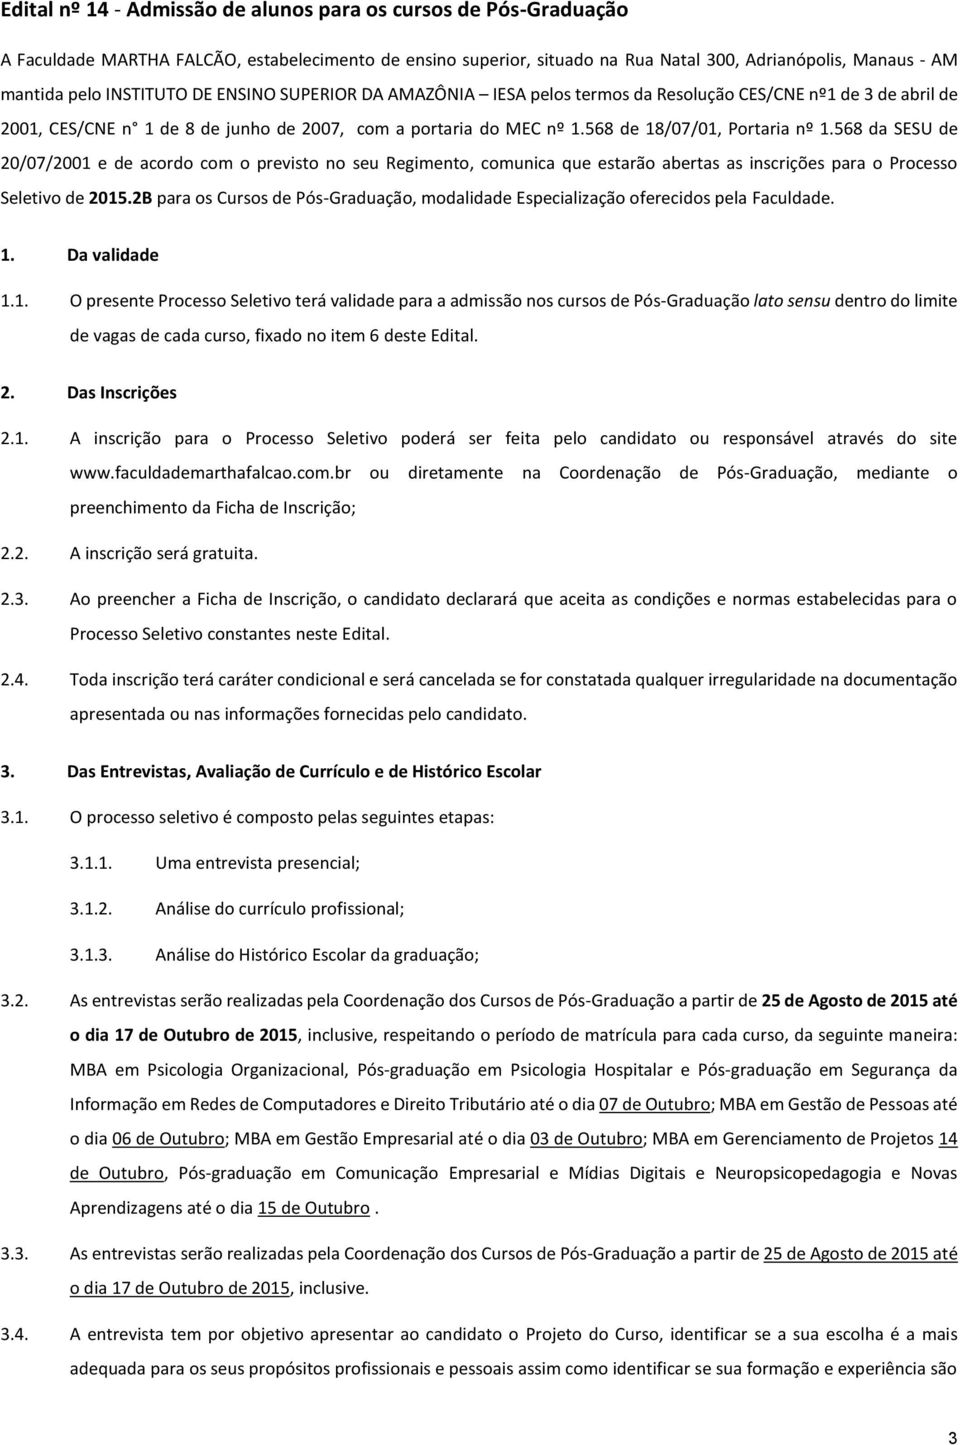 568 da SESU de 20/07/2001 e de acordo com o previsto no seu Regimento, comunica que estarão abertas as inscrições para o Processo Seletivo de 2015.